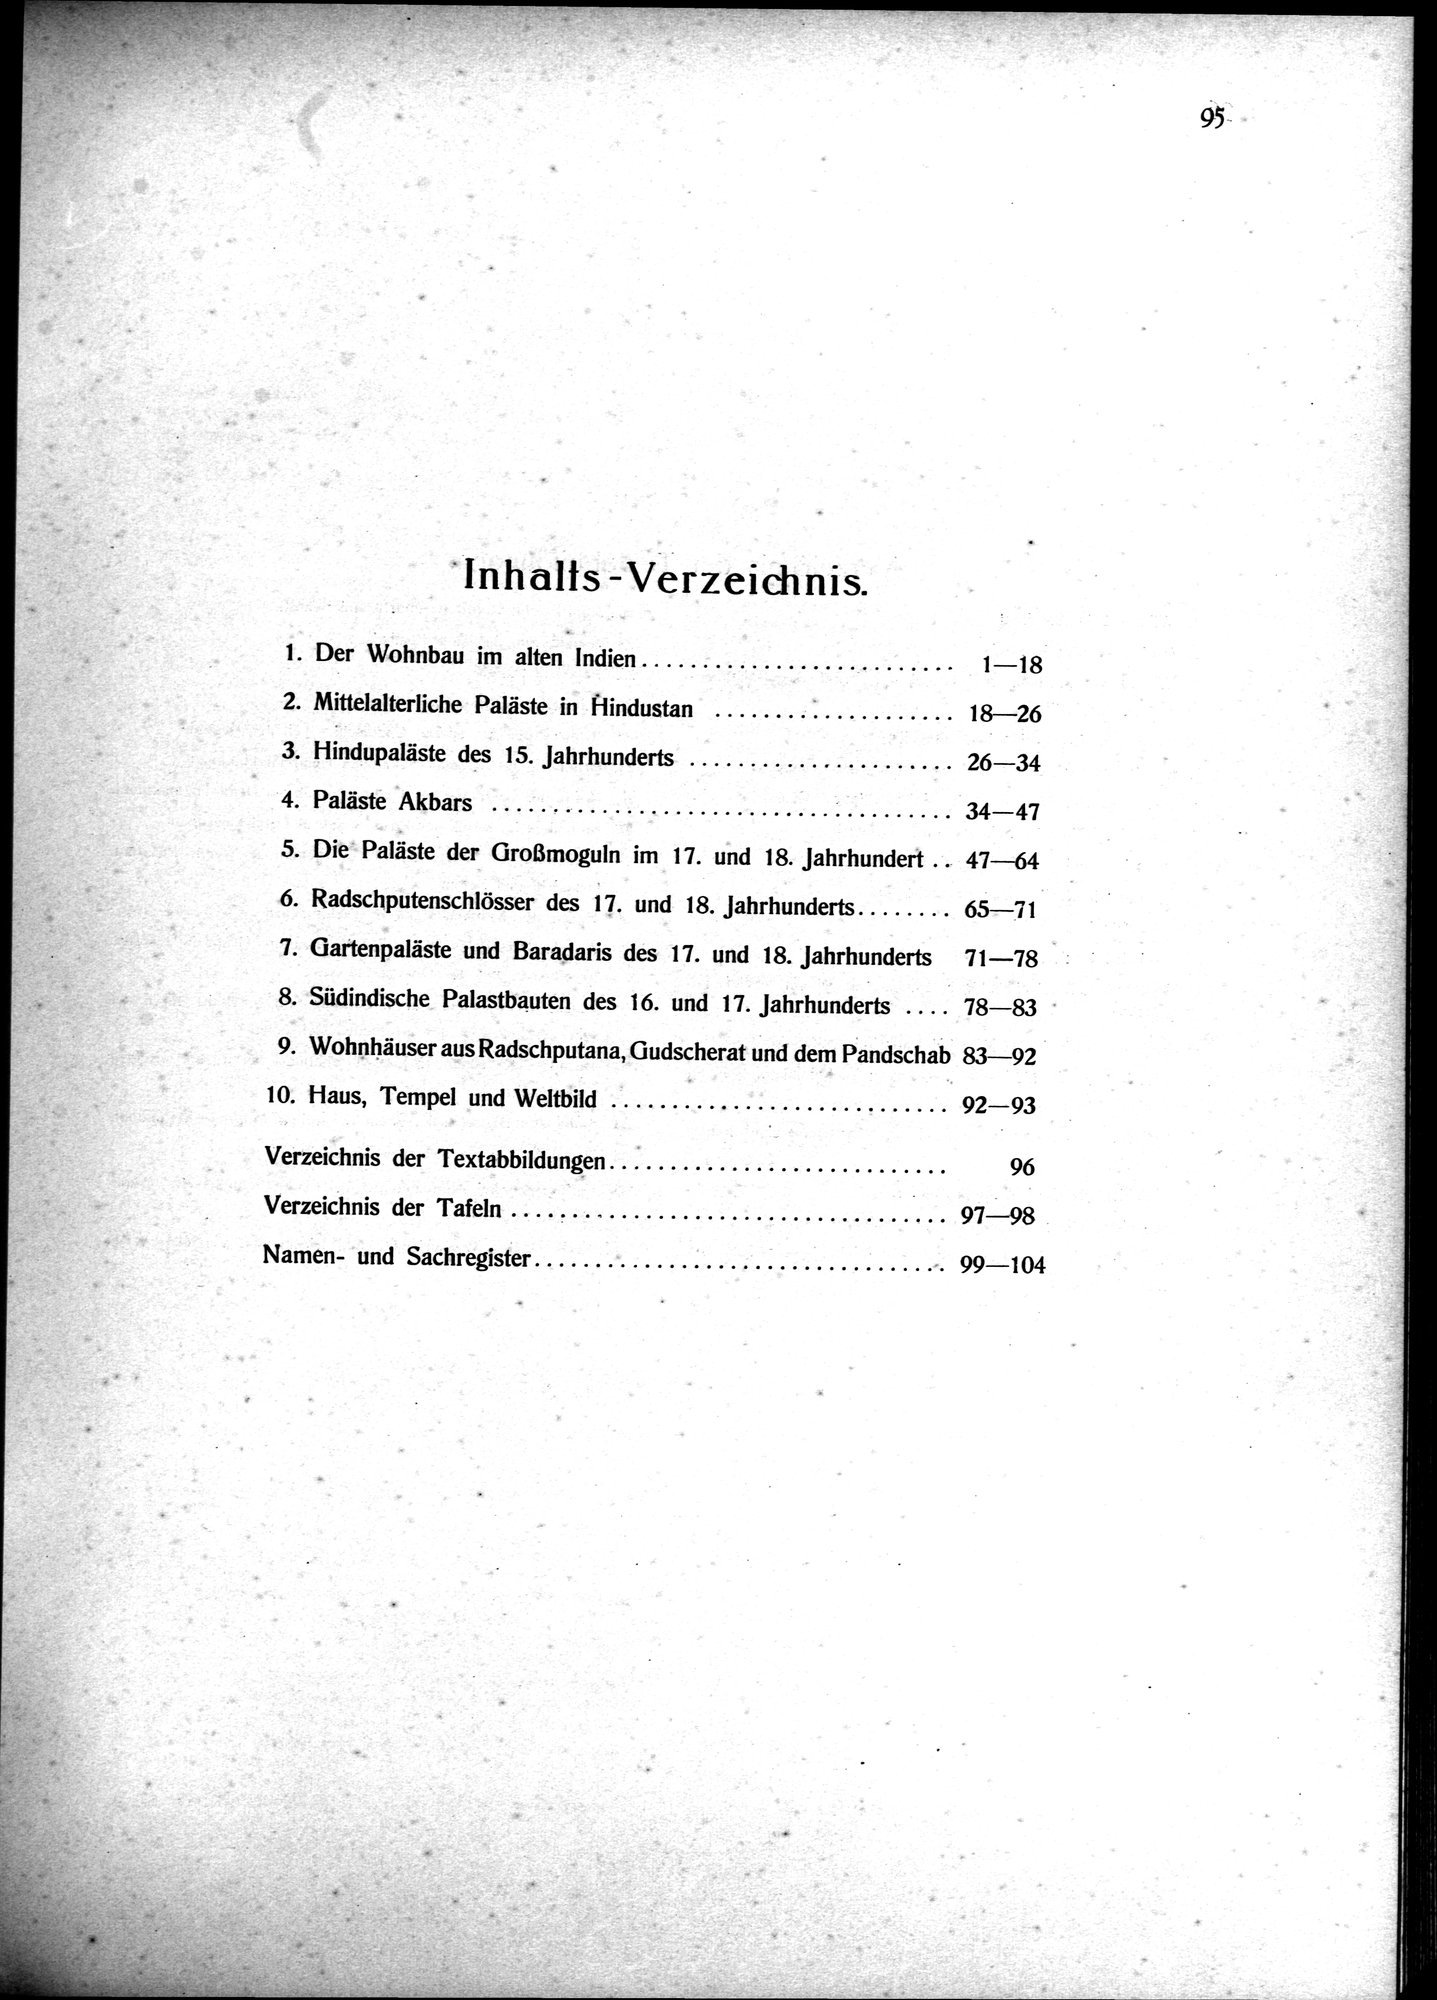 Indische Palaste und Wohnhauser : vol.1 / Page 105 (Grayscale High Resolution Image)